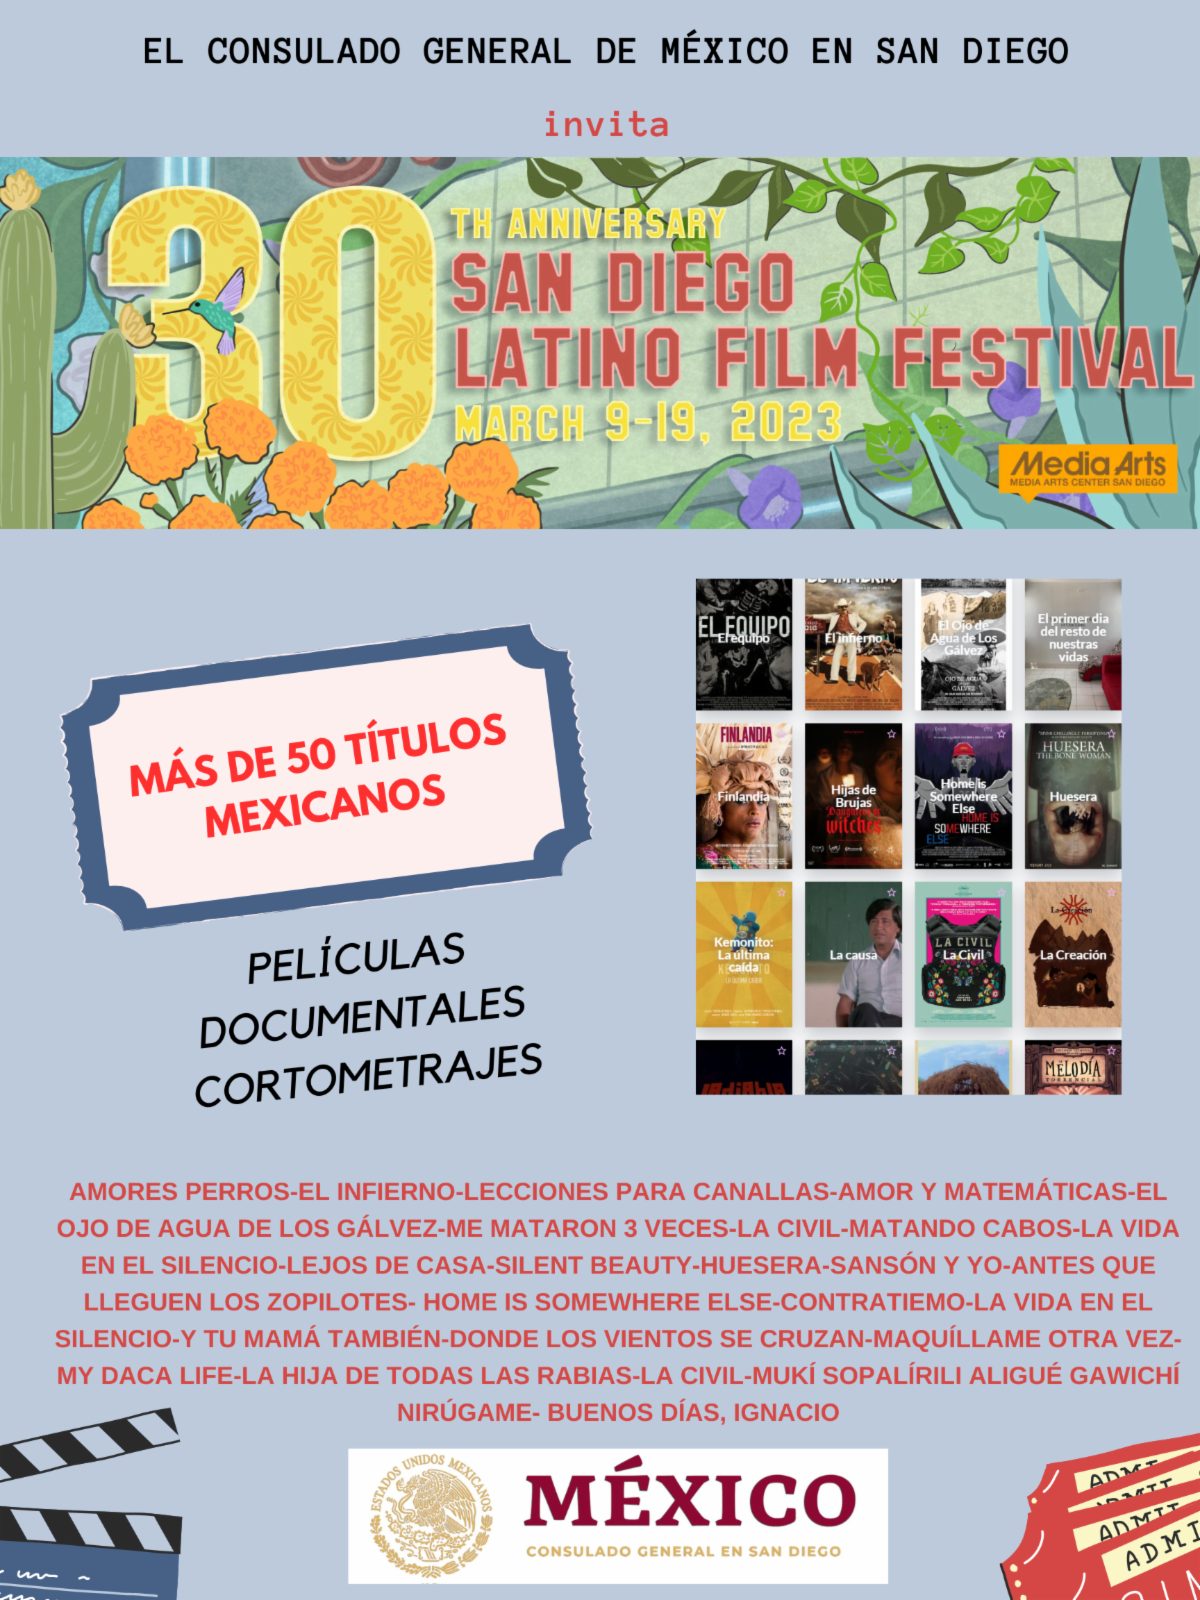 30 aniversario del San Diego Latino Film Festival: más de 50 títulos mexicanos